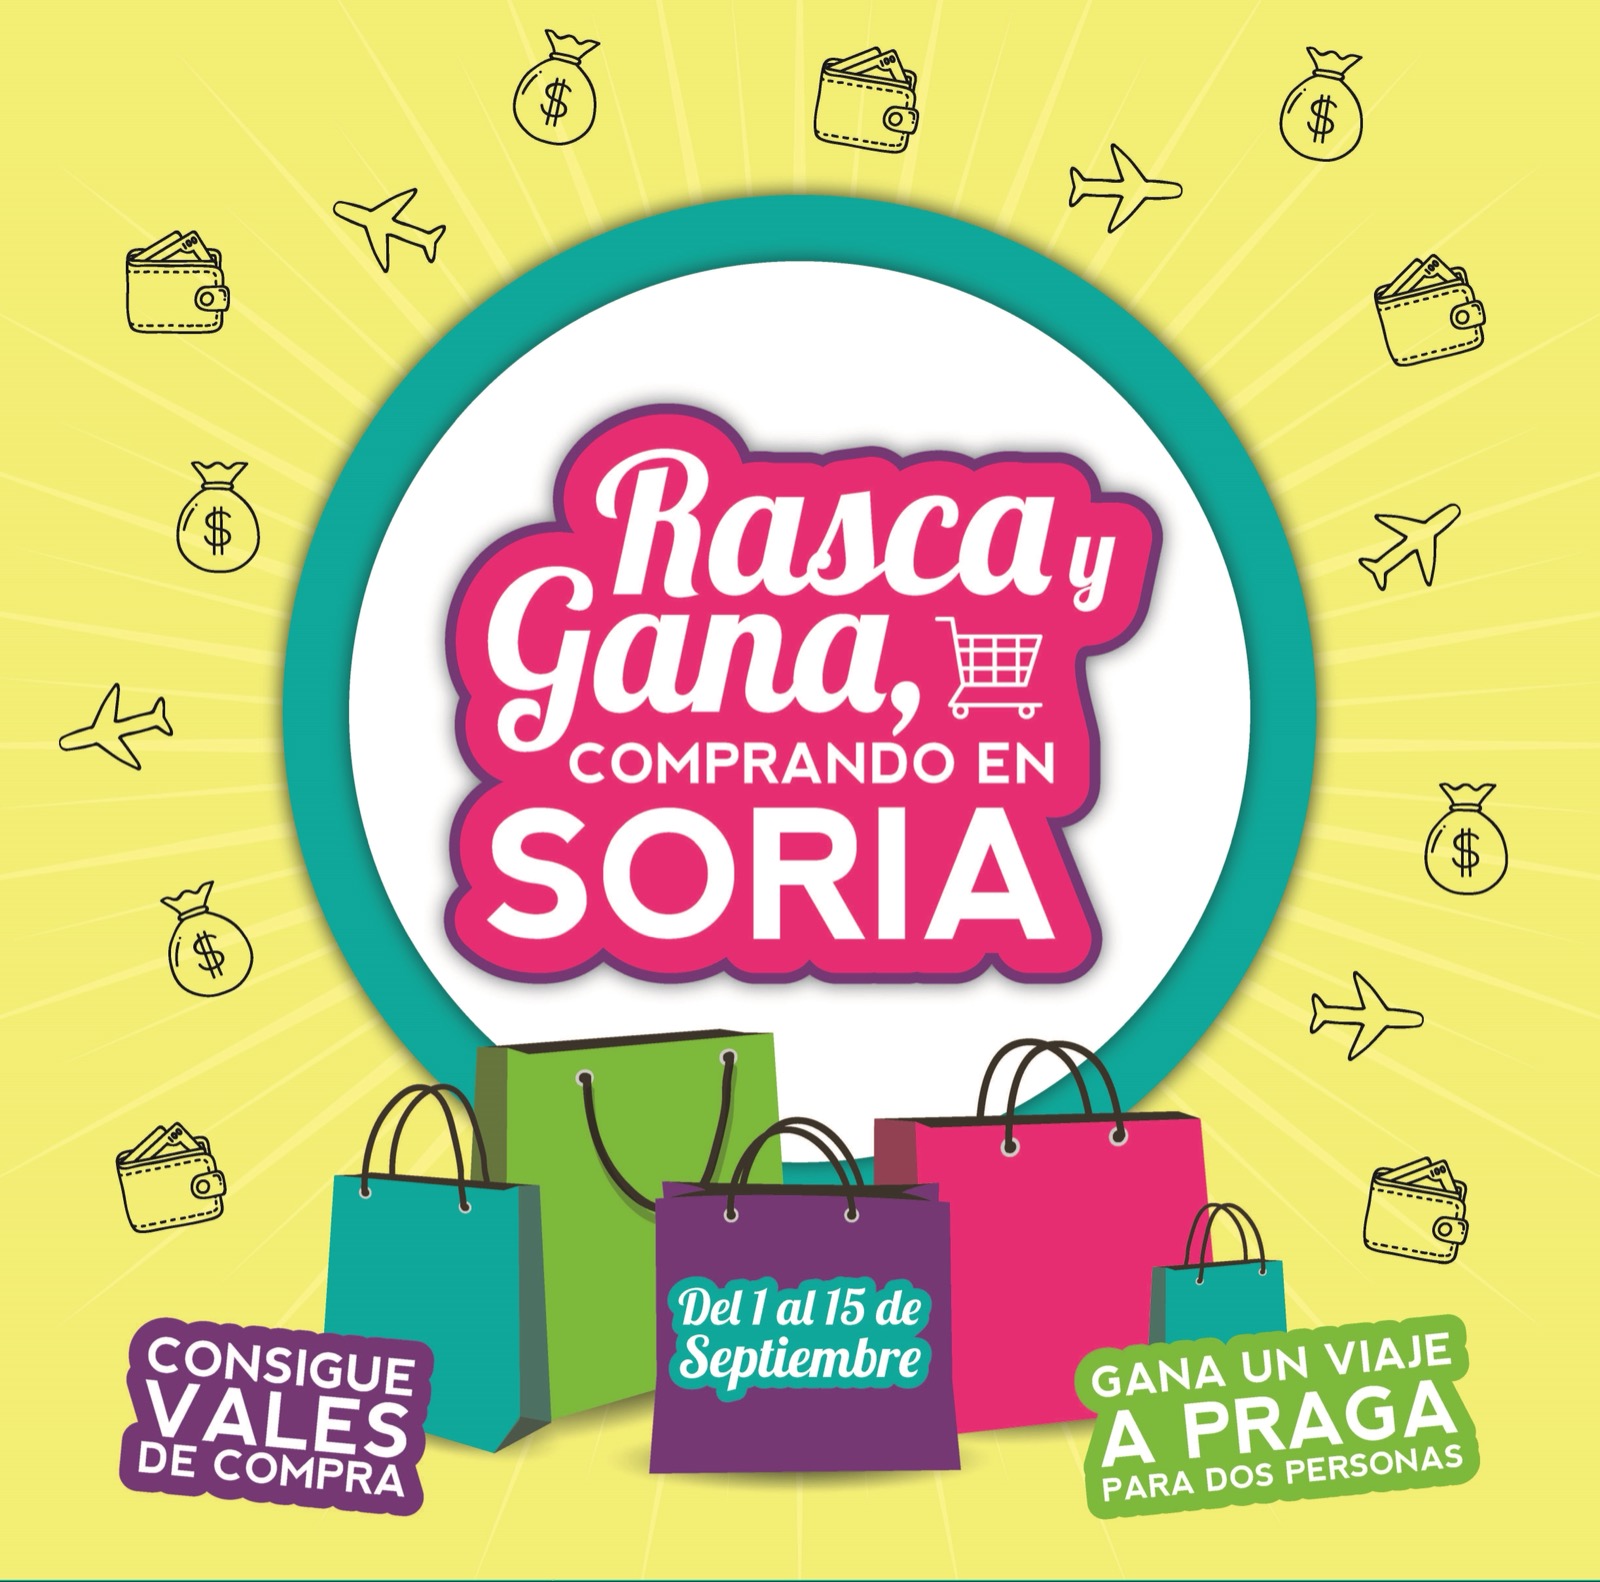 “Rasca y Gana, comprando en Soria”, nueva actuación comercial organizada por la Cámara de Comercio